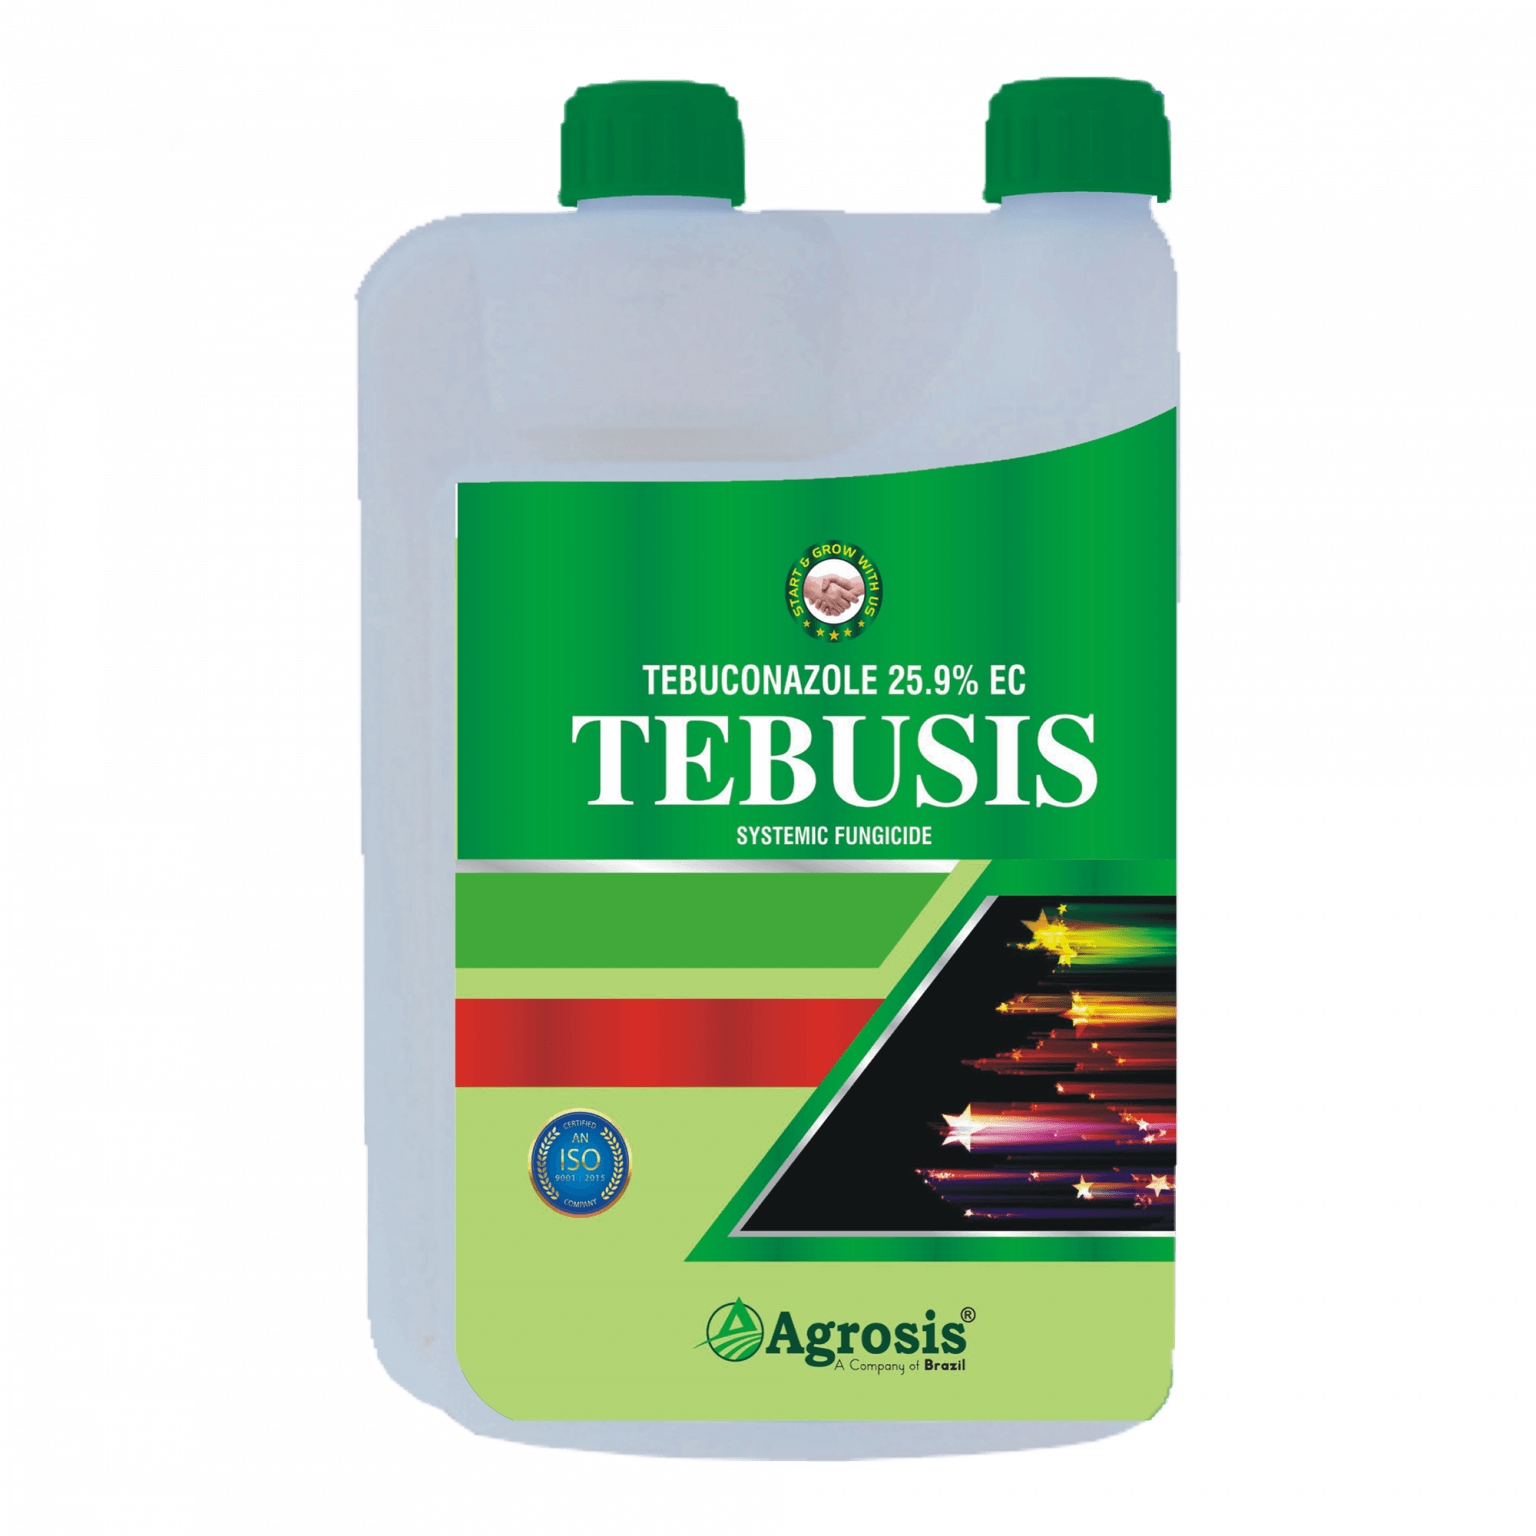 Tebusis - Tebuconazole 25.9% EC Systemic Fungicide - FarmMate.in